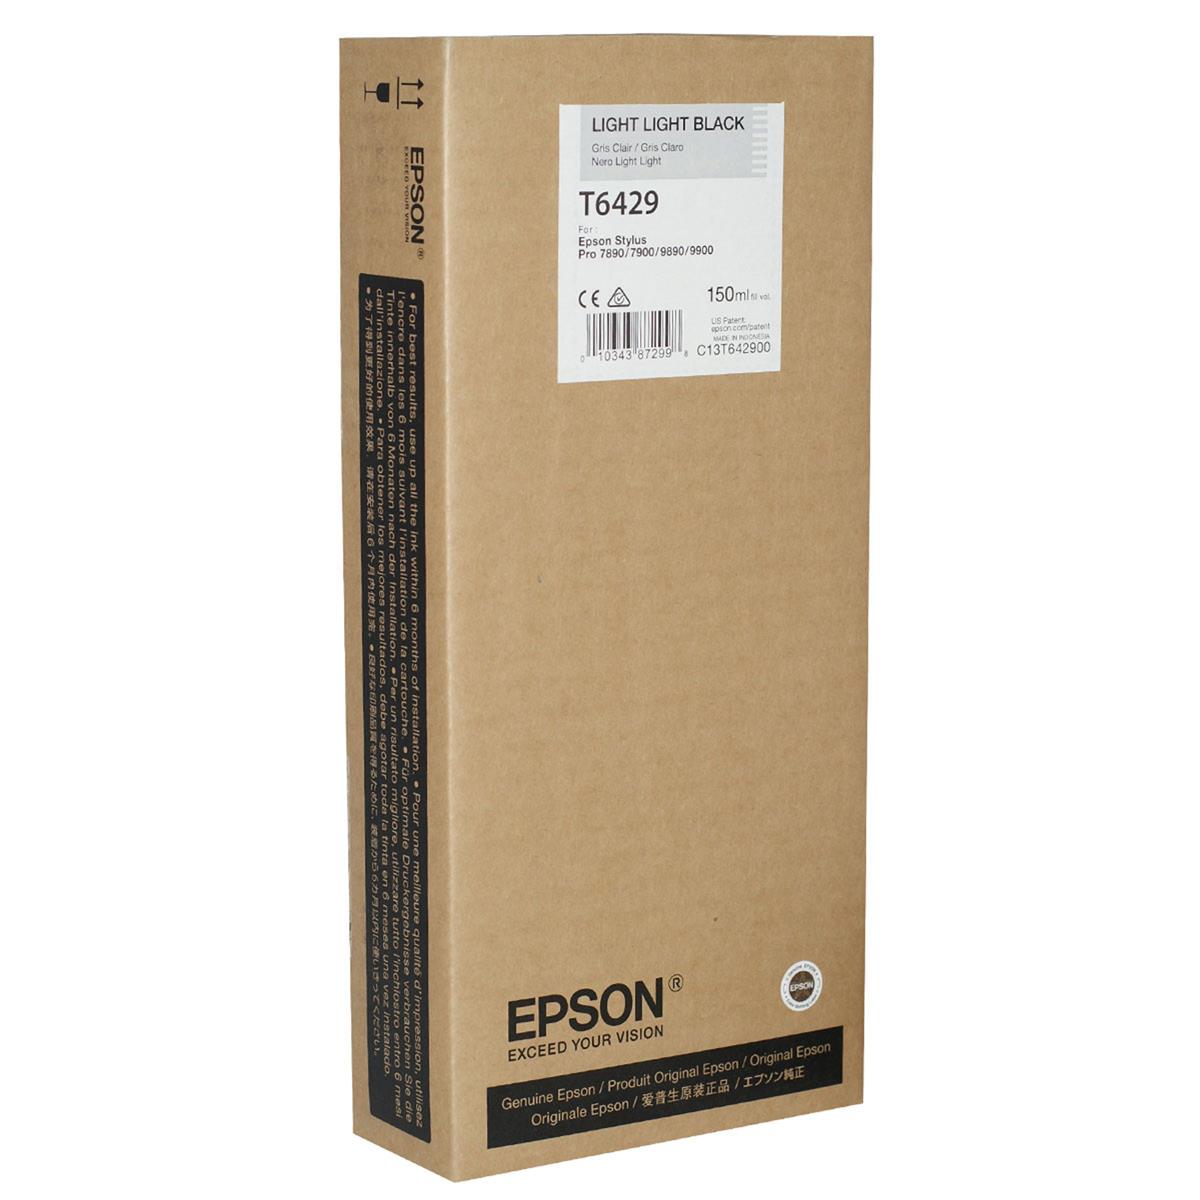 Image of Epson T642900 UltraChrome HDR Light Light Black Ink